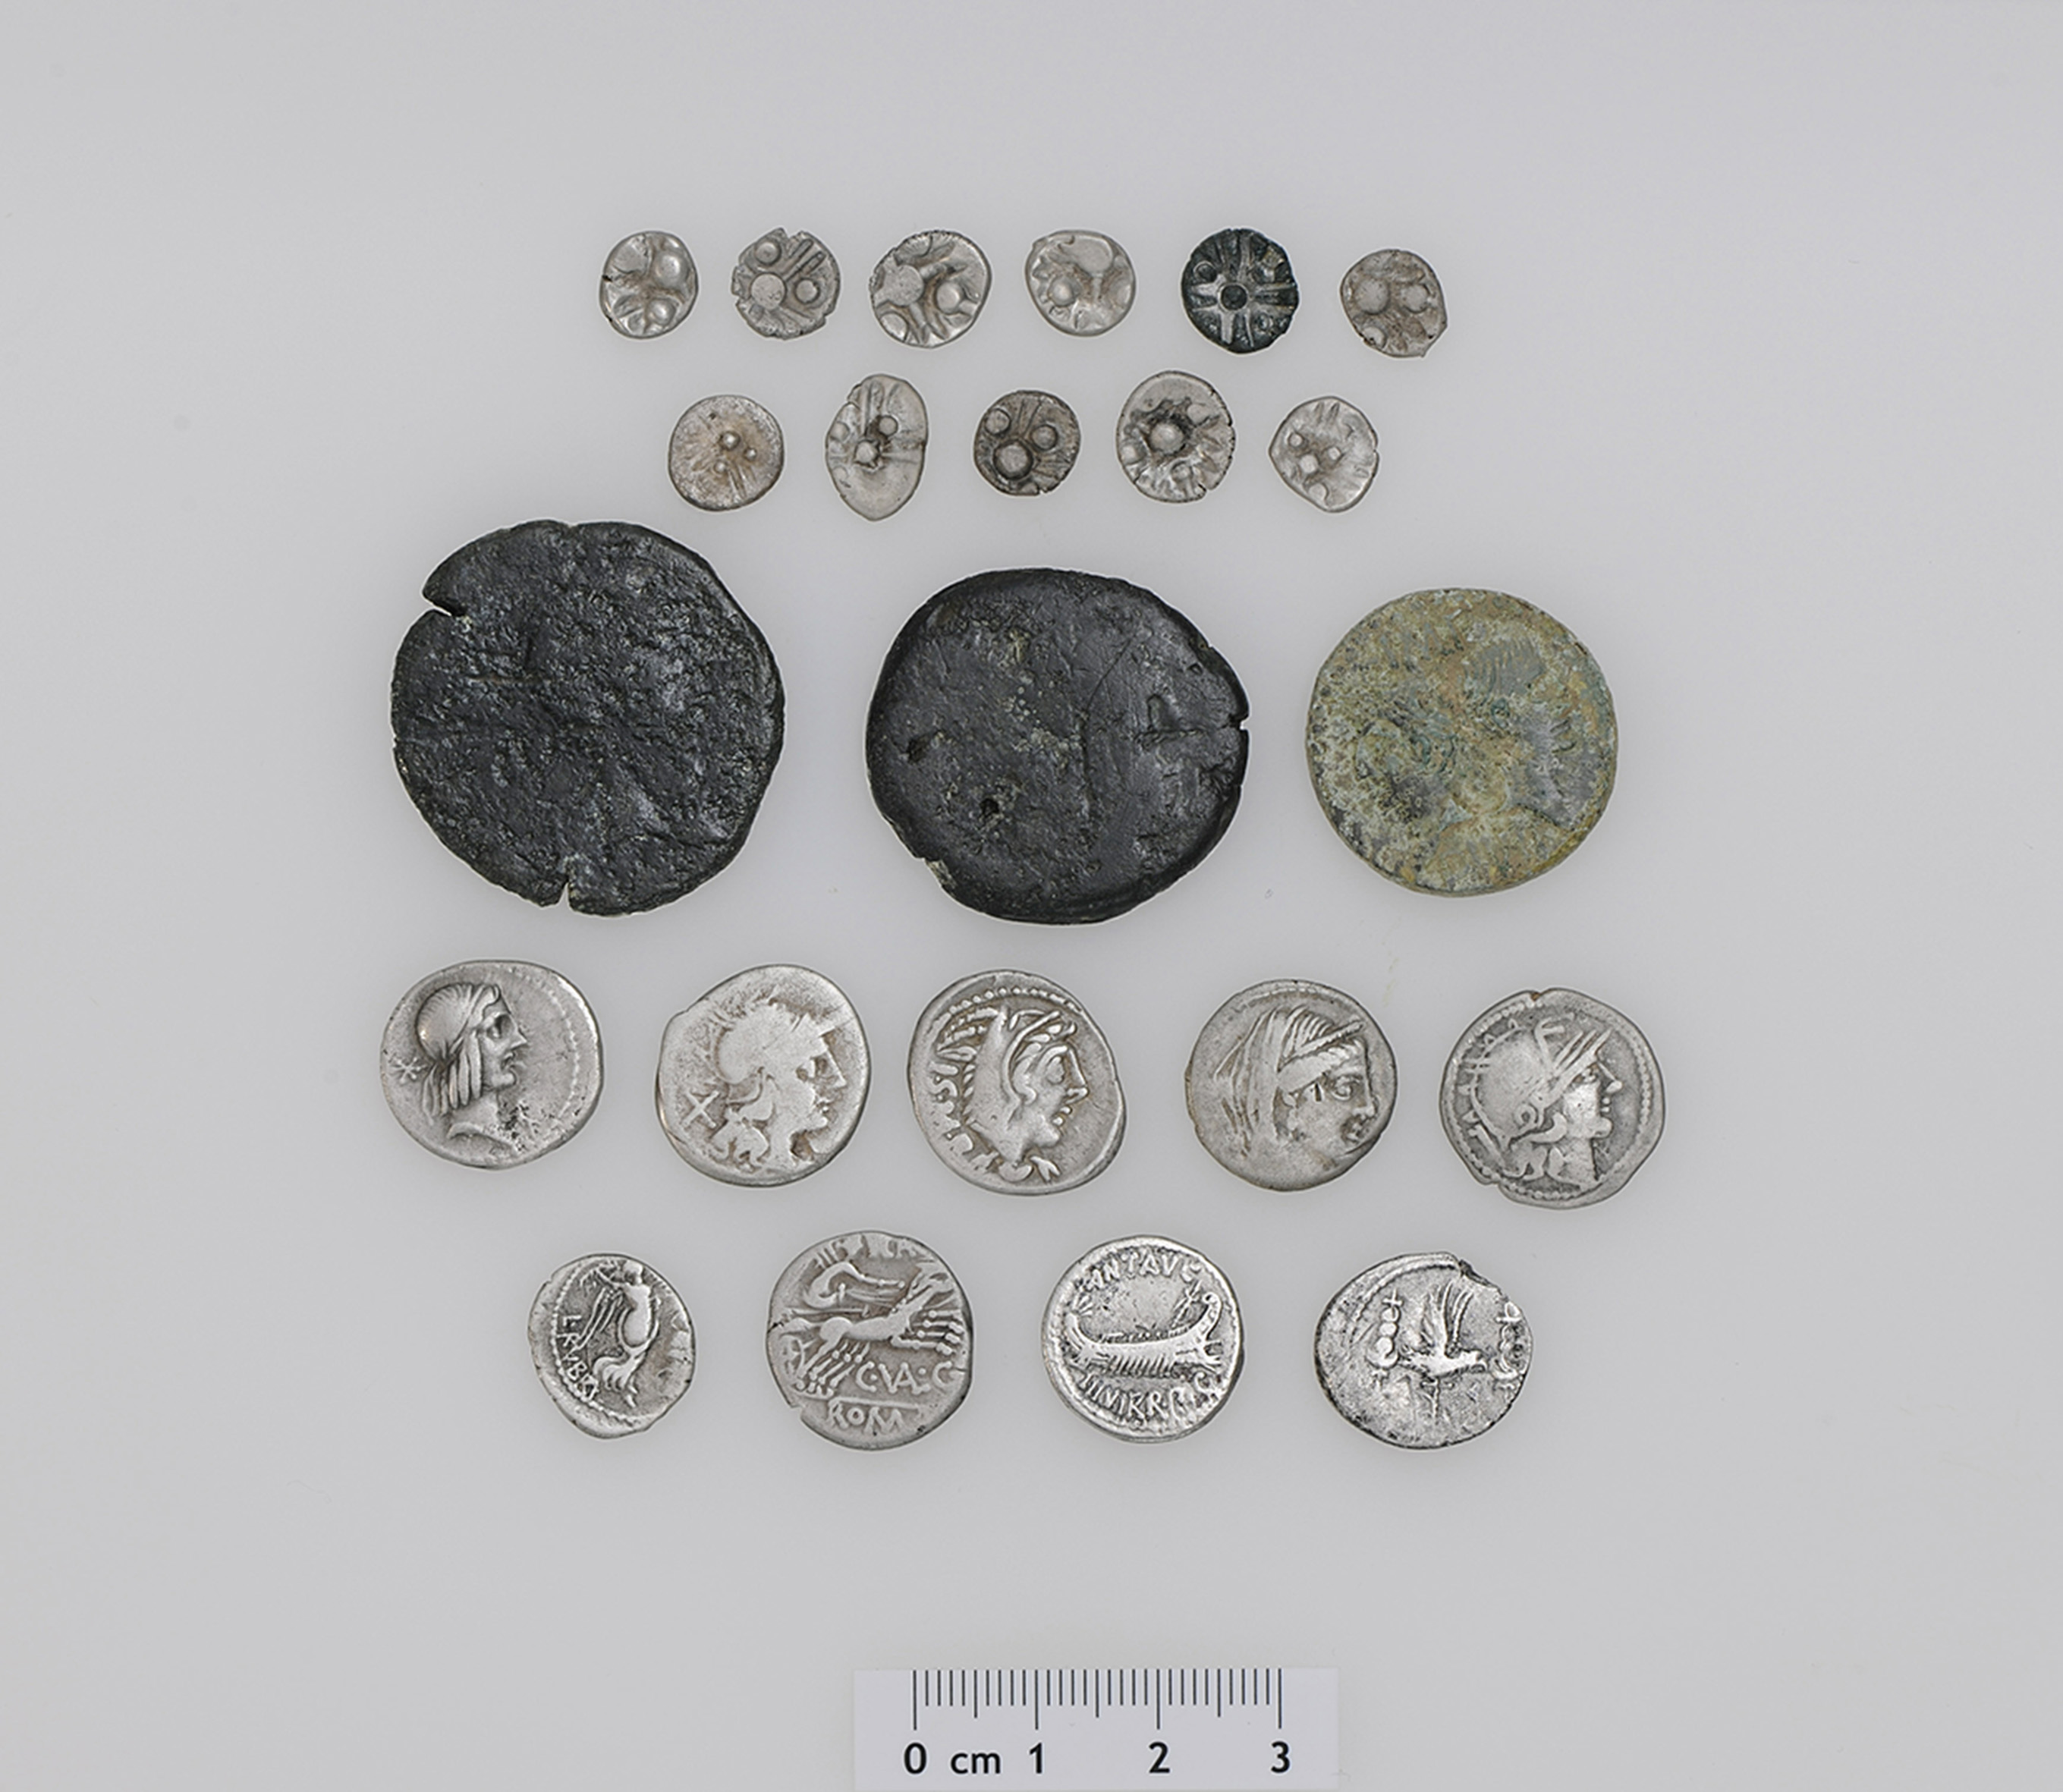 Die 23 Silber- und Bronzemünzen aus keltischer und römischer Zeit sind über 2000 Jahre alt. Es ist erst der zweite Mischfund von keltischen und römisch-republikanischen Silbermünzen in der Schweiz. Zu den 11 norischen Silbermünzen (Reihe 1 und 2 auf dem Foto) gibt es schweizweit keine Vergleichsfunde. Der Fund umfasst weiter 8 römische Silber- und 3 Bronzemünzen sowie die Imitation einer römischen Silbermünze, vermutlich aus dem südosteuropäischen Raum (Reihe 3 bis 5 auf dem Foto). Die römischen Silber-Denare und der Quinar (Reihe 4 und 5 auf dem Foto) weisen die Namen der Münzmeister C. Valerius Flaccus, L. Thorius Balbus, L. Piso Frugi und L. Rubrius Dossenus sowie den Namen des Feldherrn Marcus Antonius auf. Das jüngste Fundstück wurde um 15–9/7 v. Chr. in Nemausus, dem heutigen Nîmes (Frankreich), geprägt und gibt einen Hinweis darauf, ab wann der Schatzfund in den Boden gelangt ist. Foto: Res Eichenberger (Amt für Denkmalpflege und Archäologie des Kantons Zug).